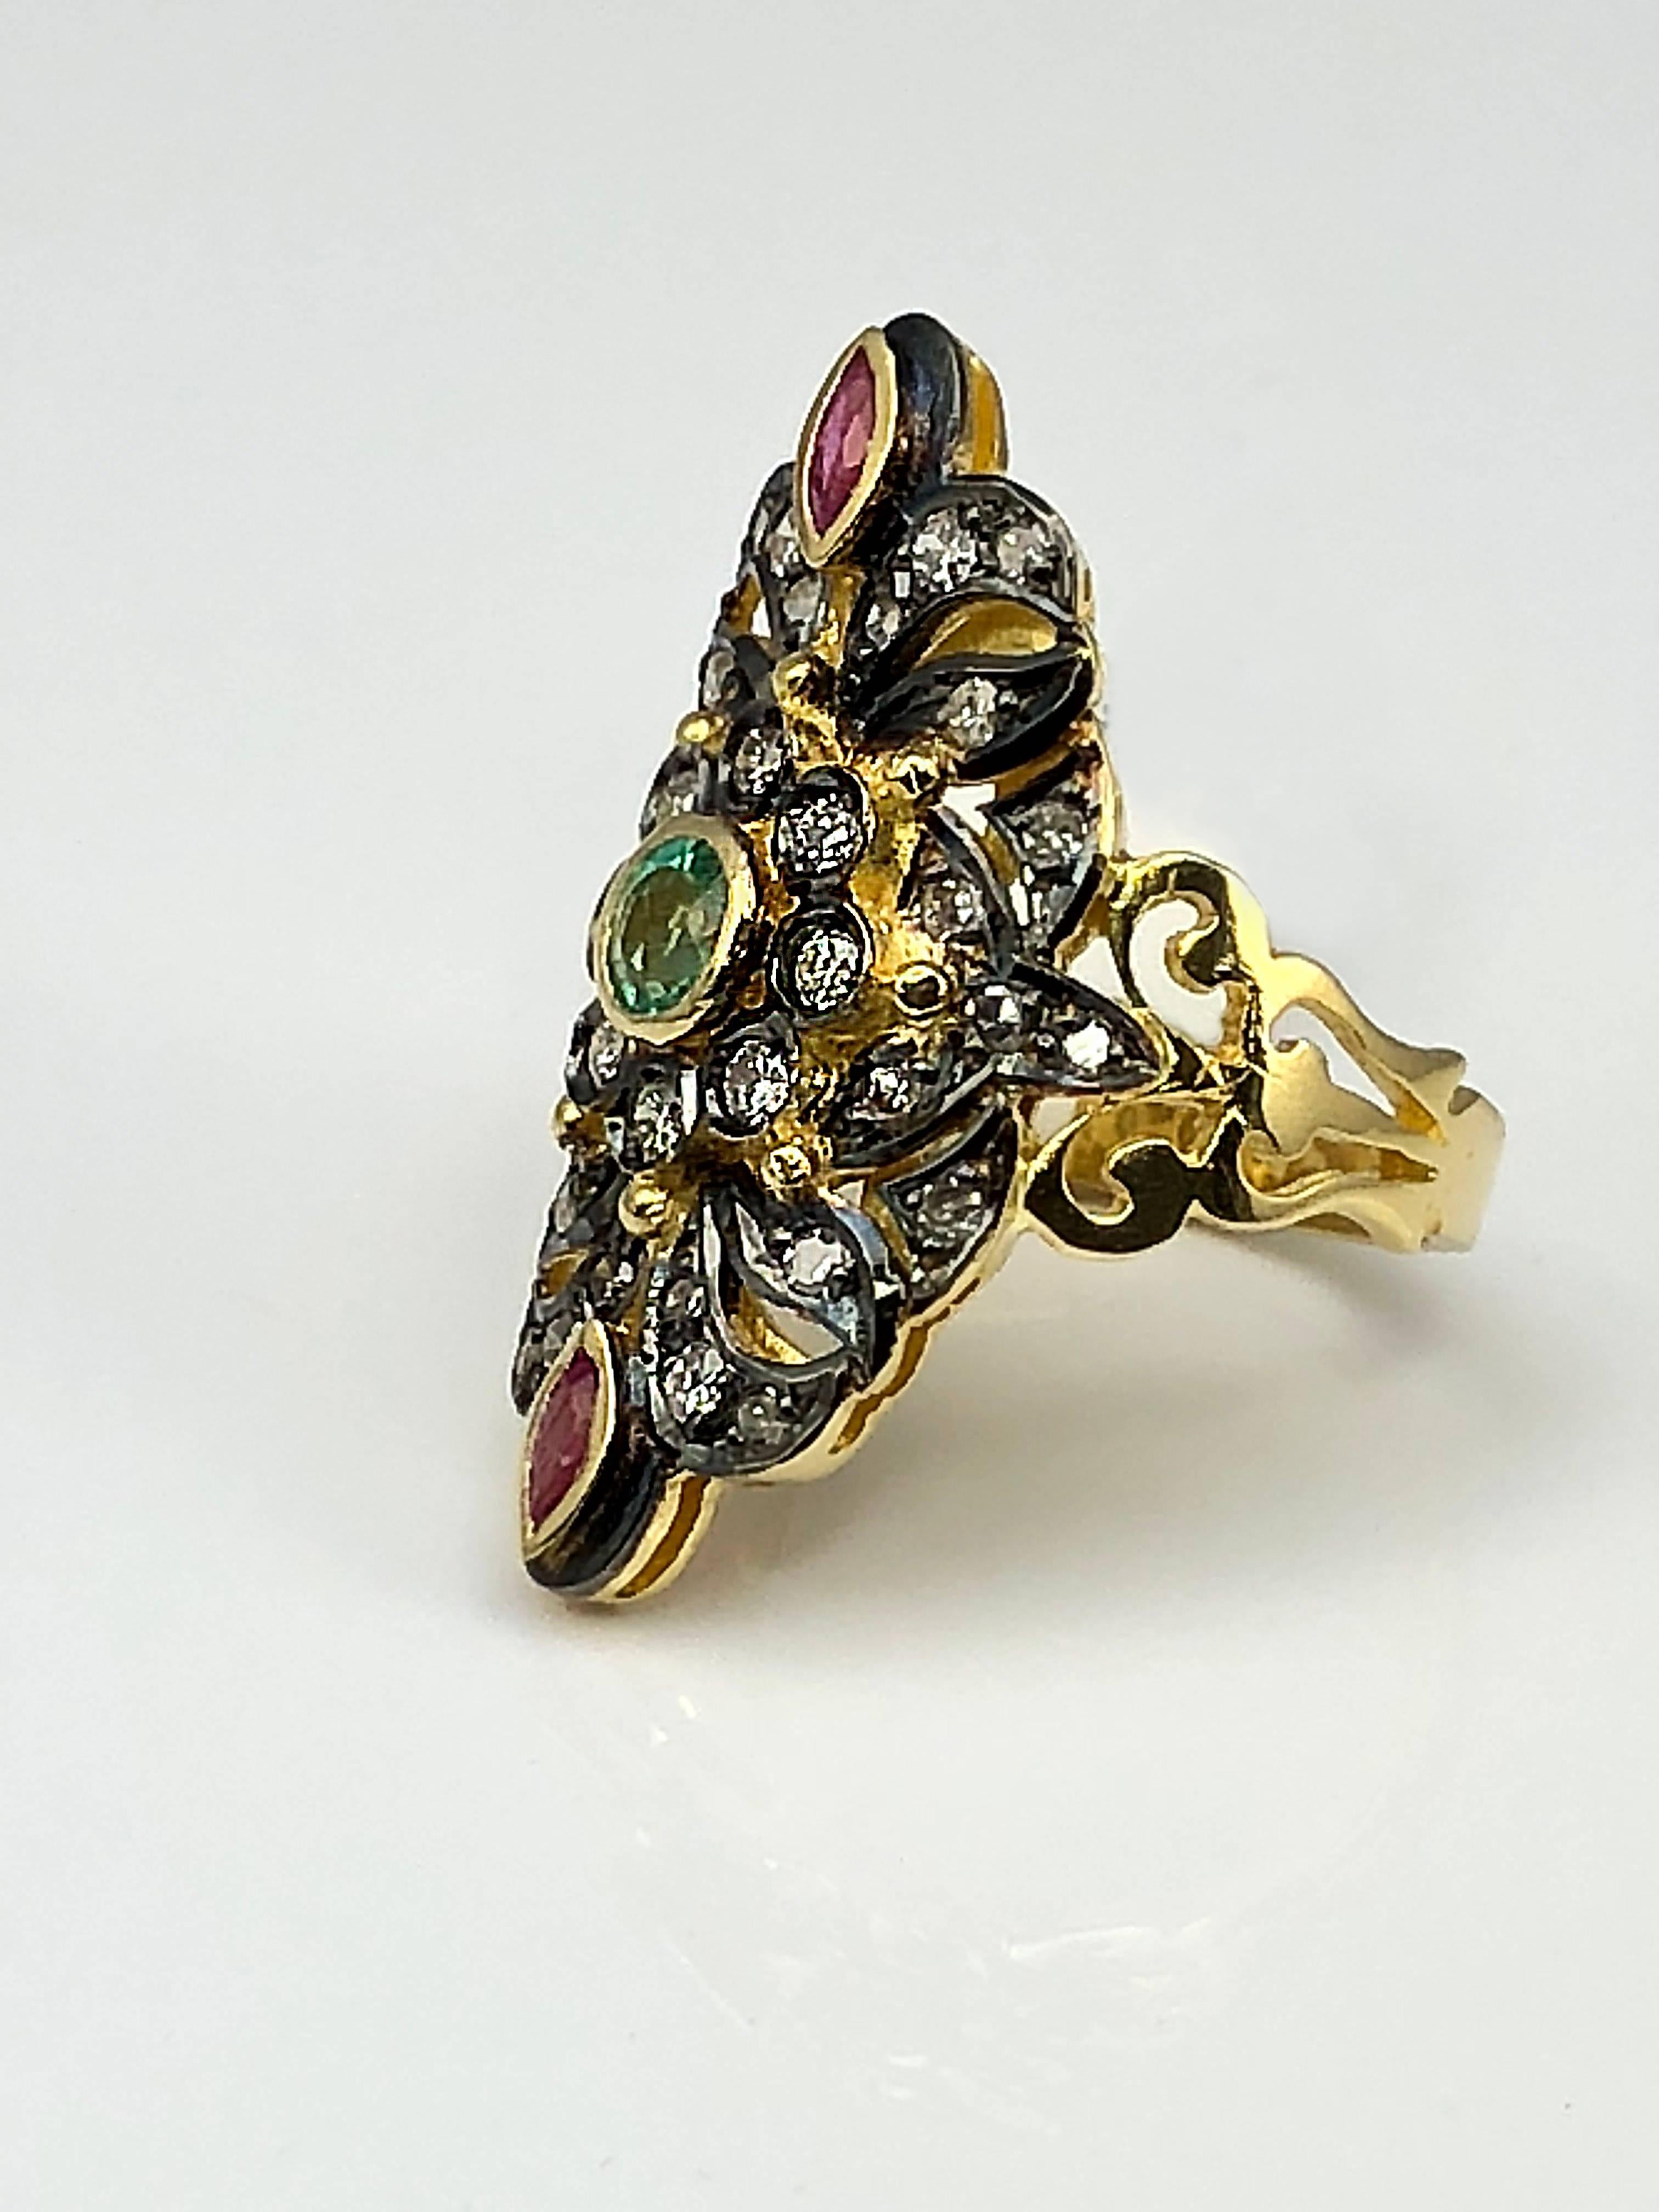 S.Georgios Designer alle Hand Made 18 Karat Gelbgold Ring mit byzantinischen Stil Granulation und eine Kombination von Diamanten, Rubinen und Smaragd verziert. Der atemberaubende Ring ist reich verziert und die schwarzen Rhodiumflächen verleihen ihm